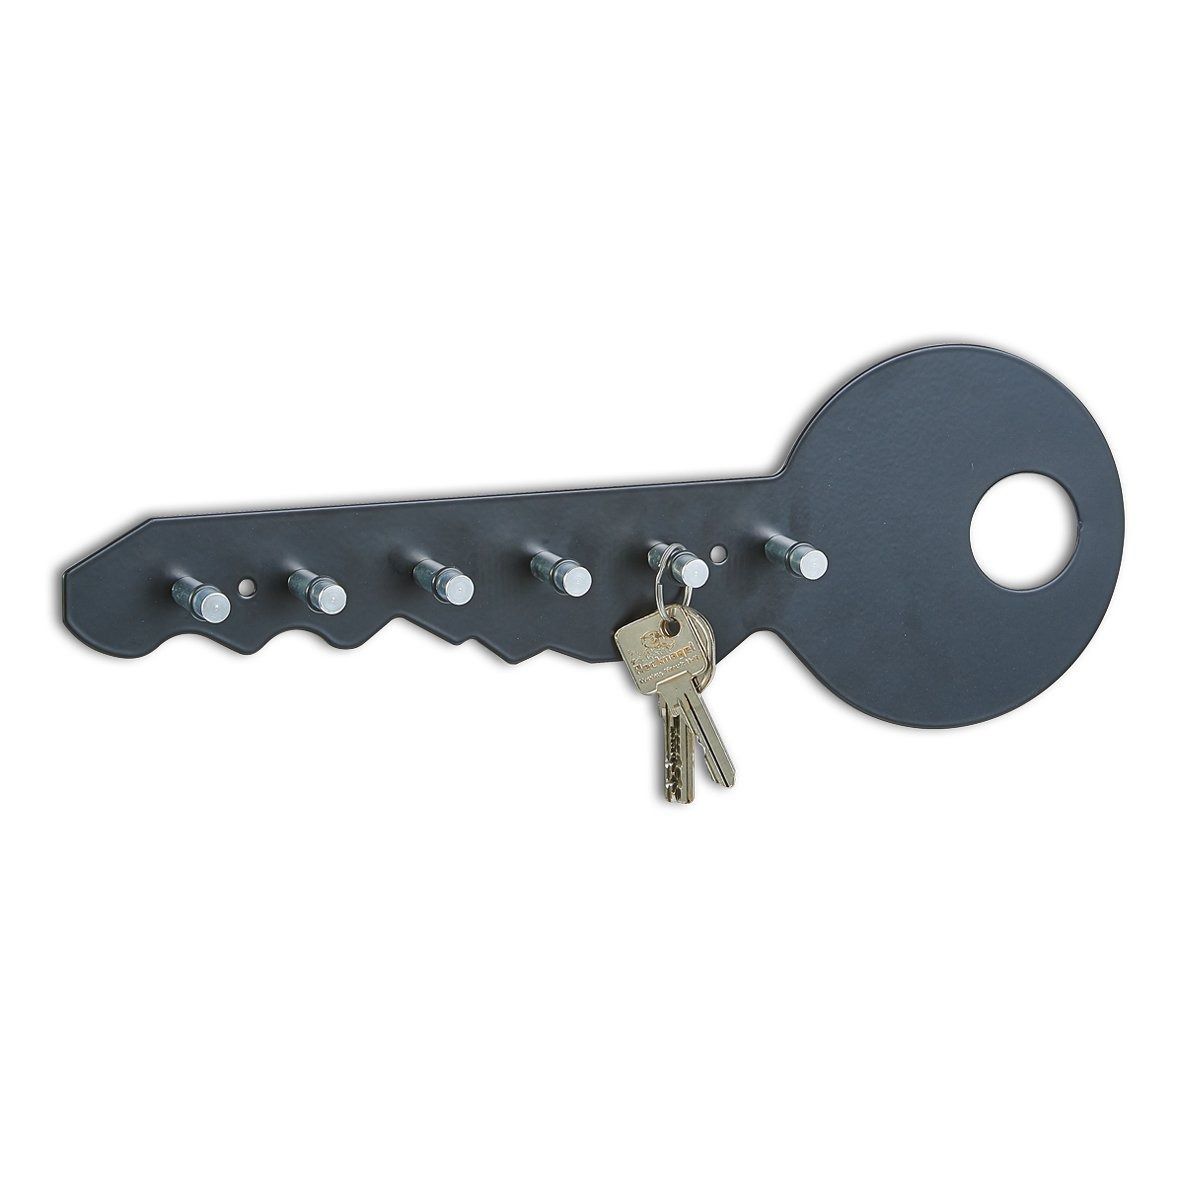 Kvalitní věšák na klíče, 6 háčků, 35x12x4 cm, černá barva, ZELLER - EMAKO.CZ s.r.o.